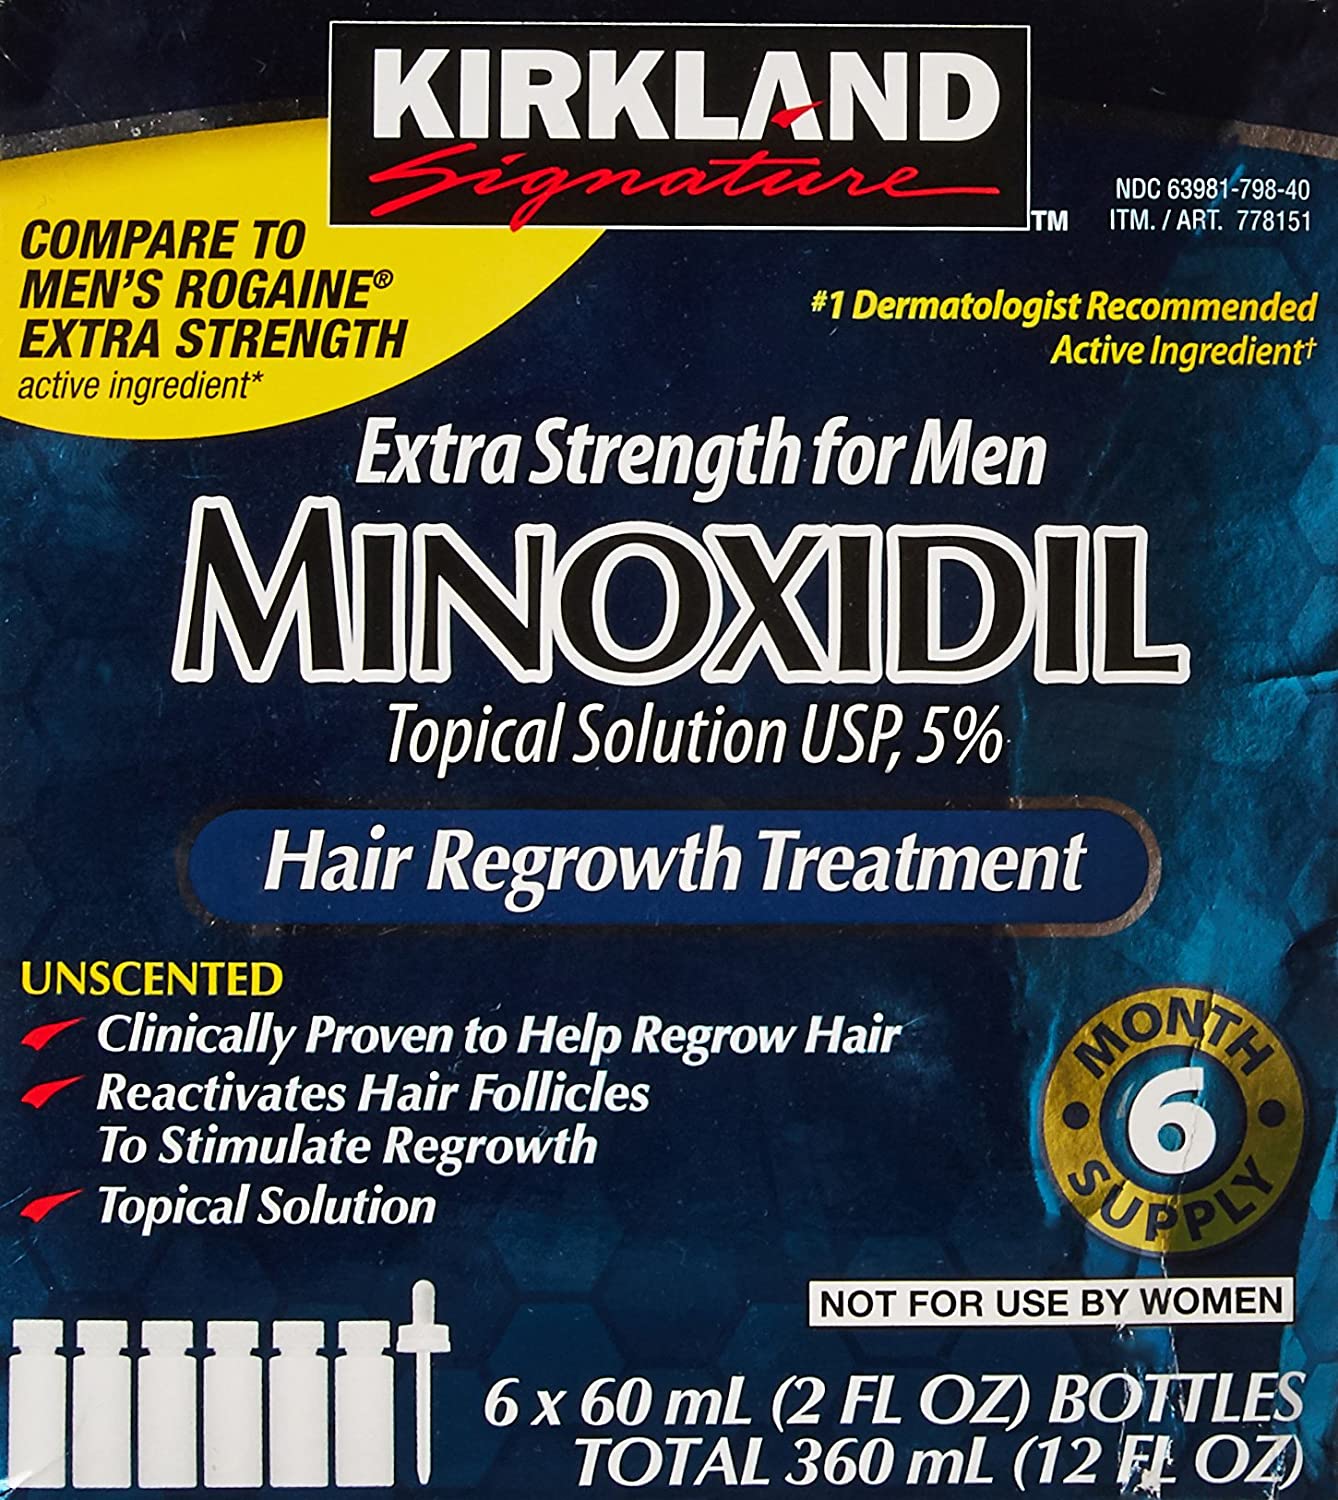 KIRKLAND Minoxidil Hair Growth Oil Hair Treatment Oil Online in Ghana | KOFshop.com | 0592712107